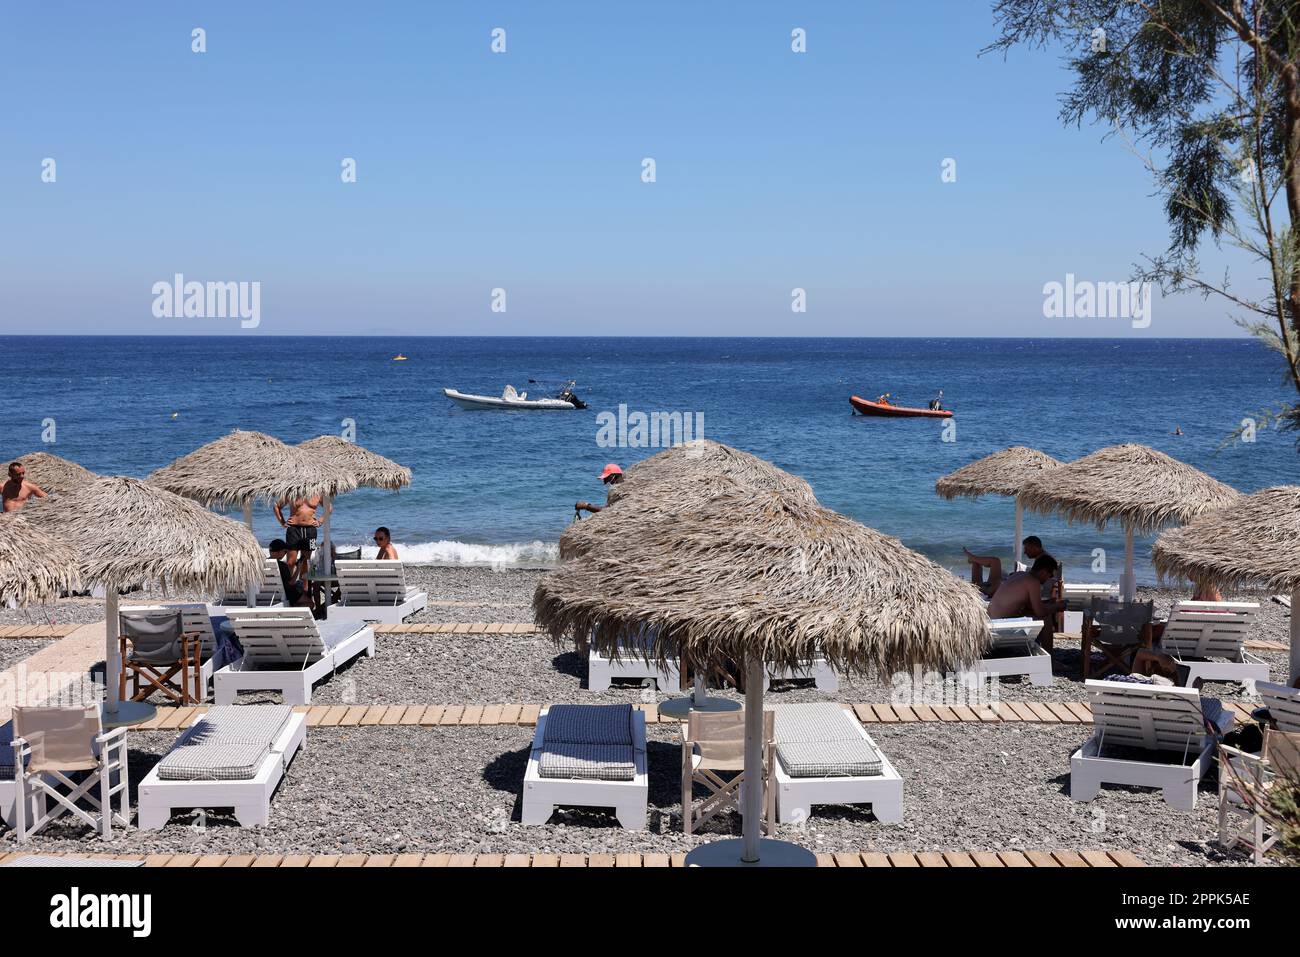 Chaises longues sur la plage volcanique noire de Kamari à Santorin.Cyclades, Grèce Banque D'Images